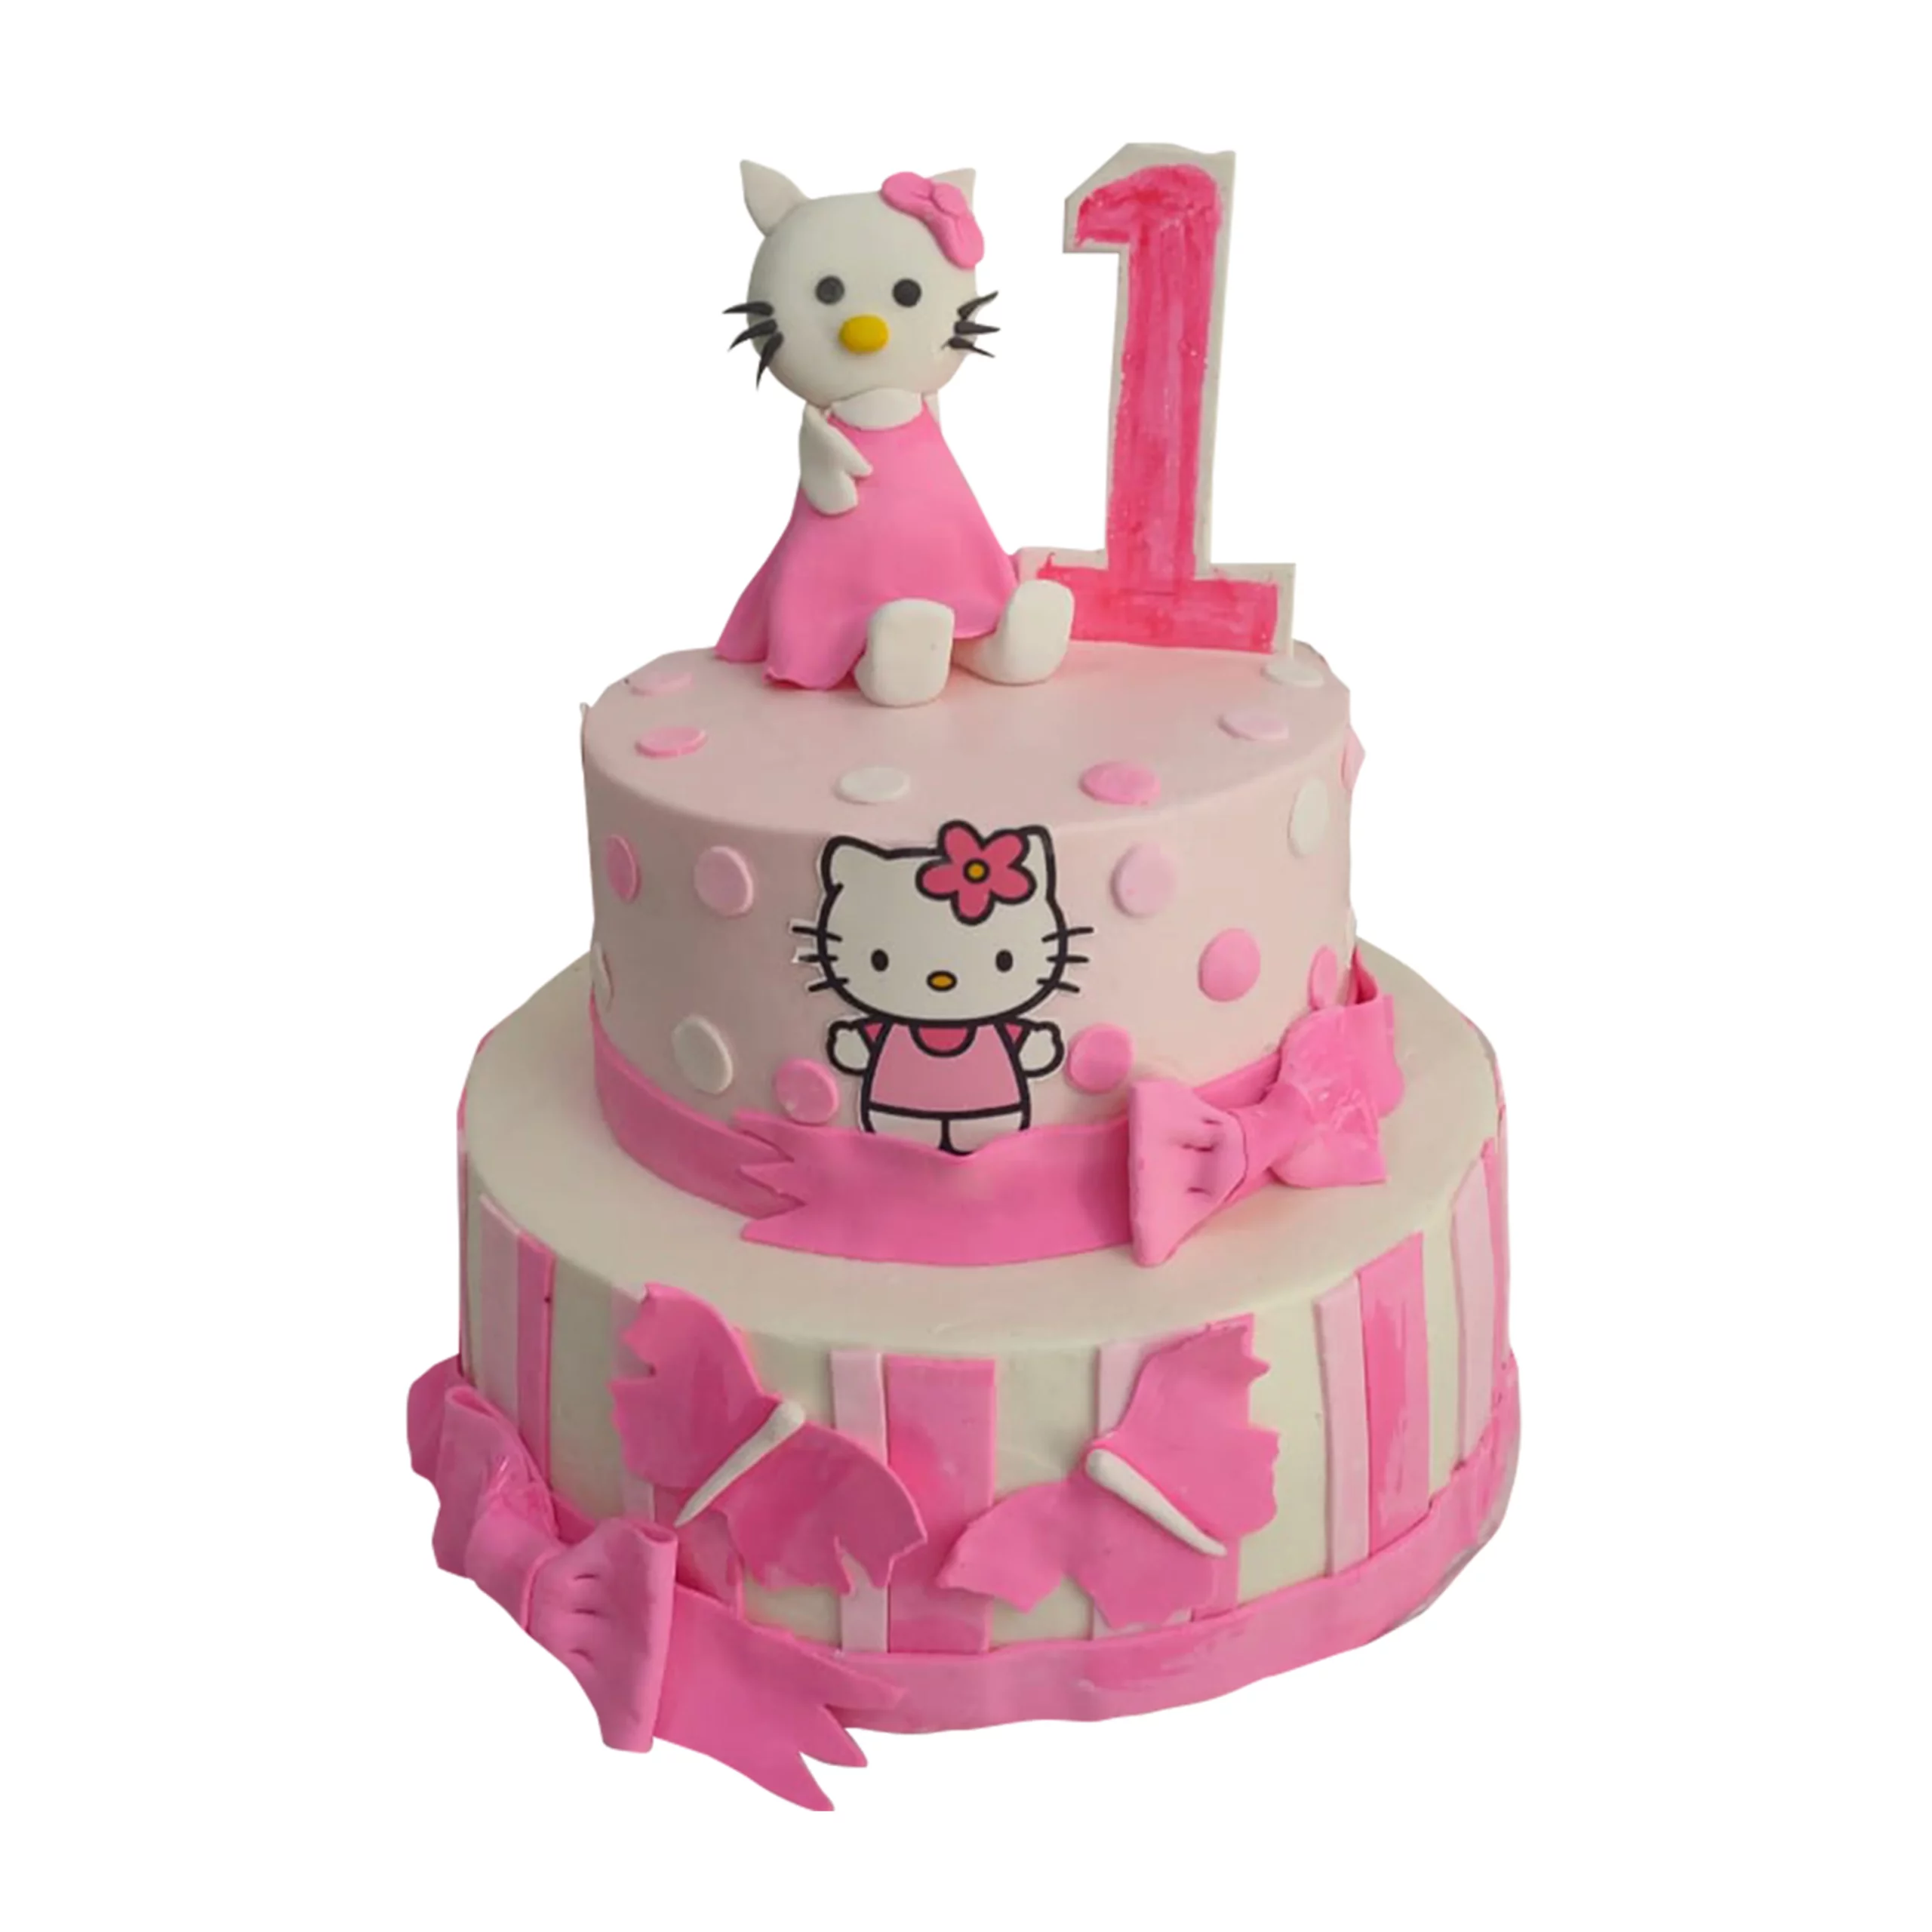 Hello Kitty Face Cake & Cupcakes | Sarah's Sweets & Treats